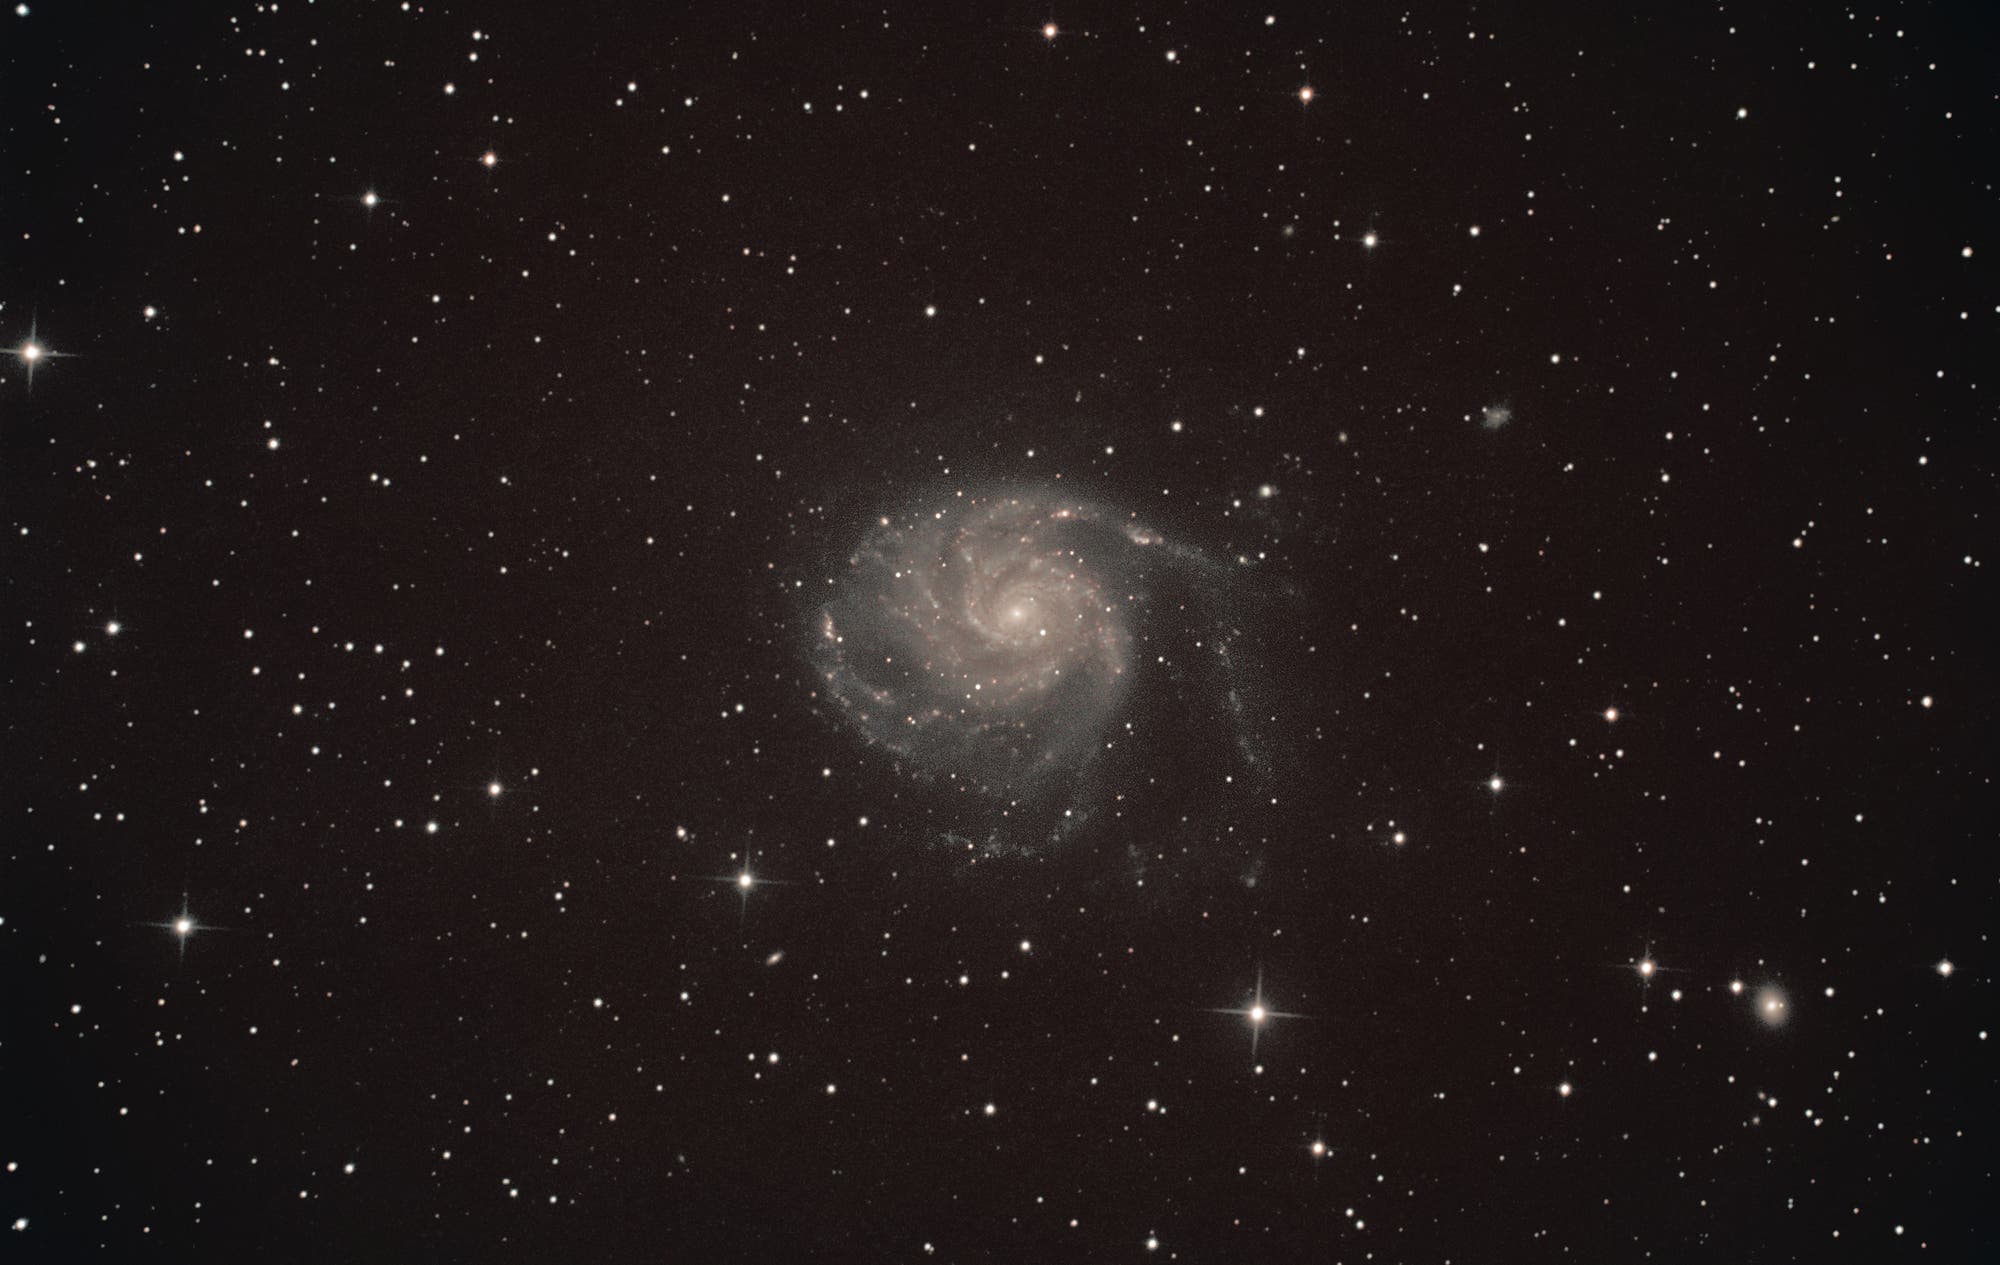 Feuerrad-Galaxie Messier 101 im Sternbild Großer Bär (Ursa Major)